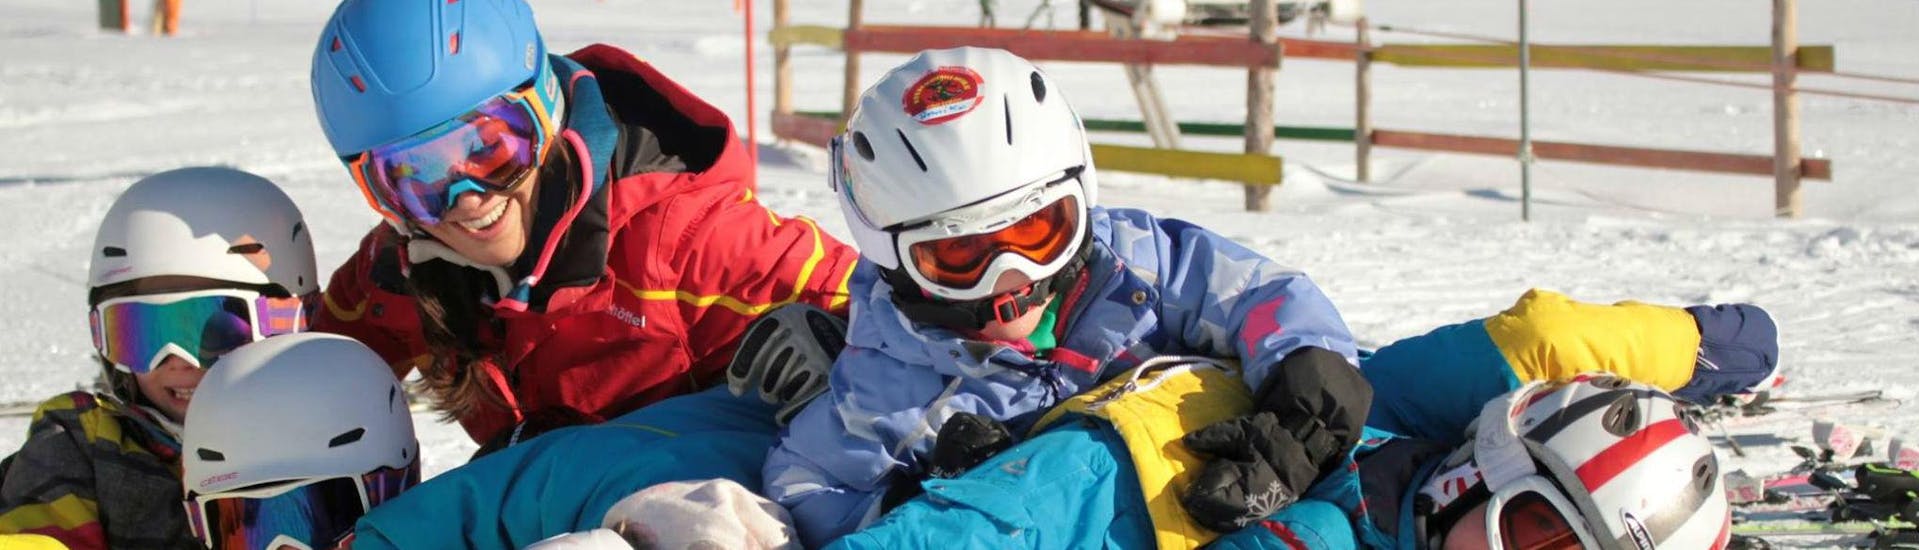 Skilessen voor kinderen vanaf 3 jaar - gevorderd.